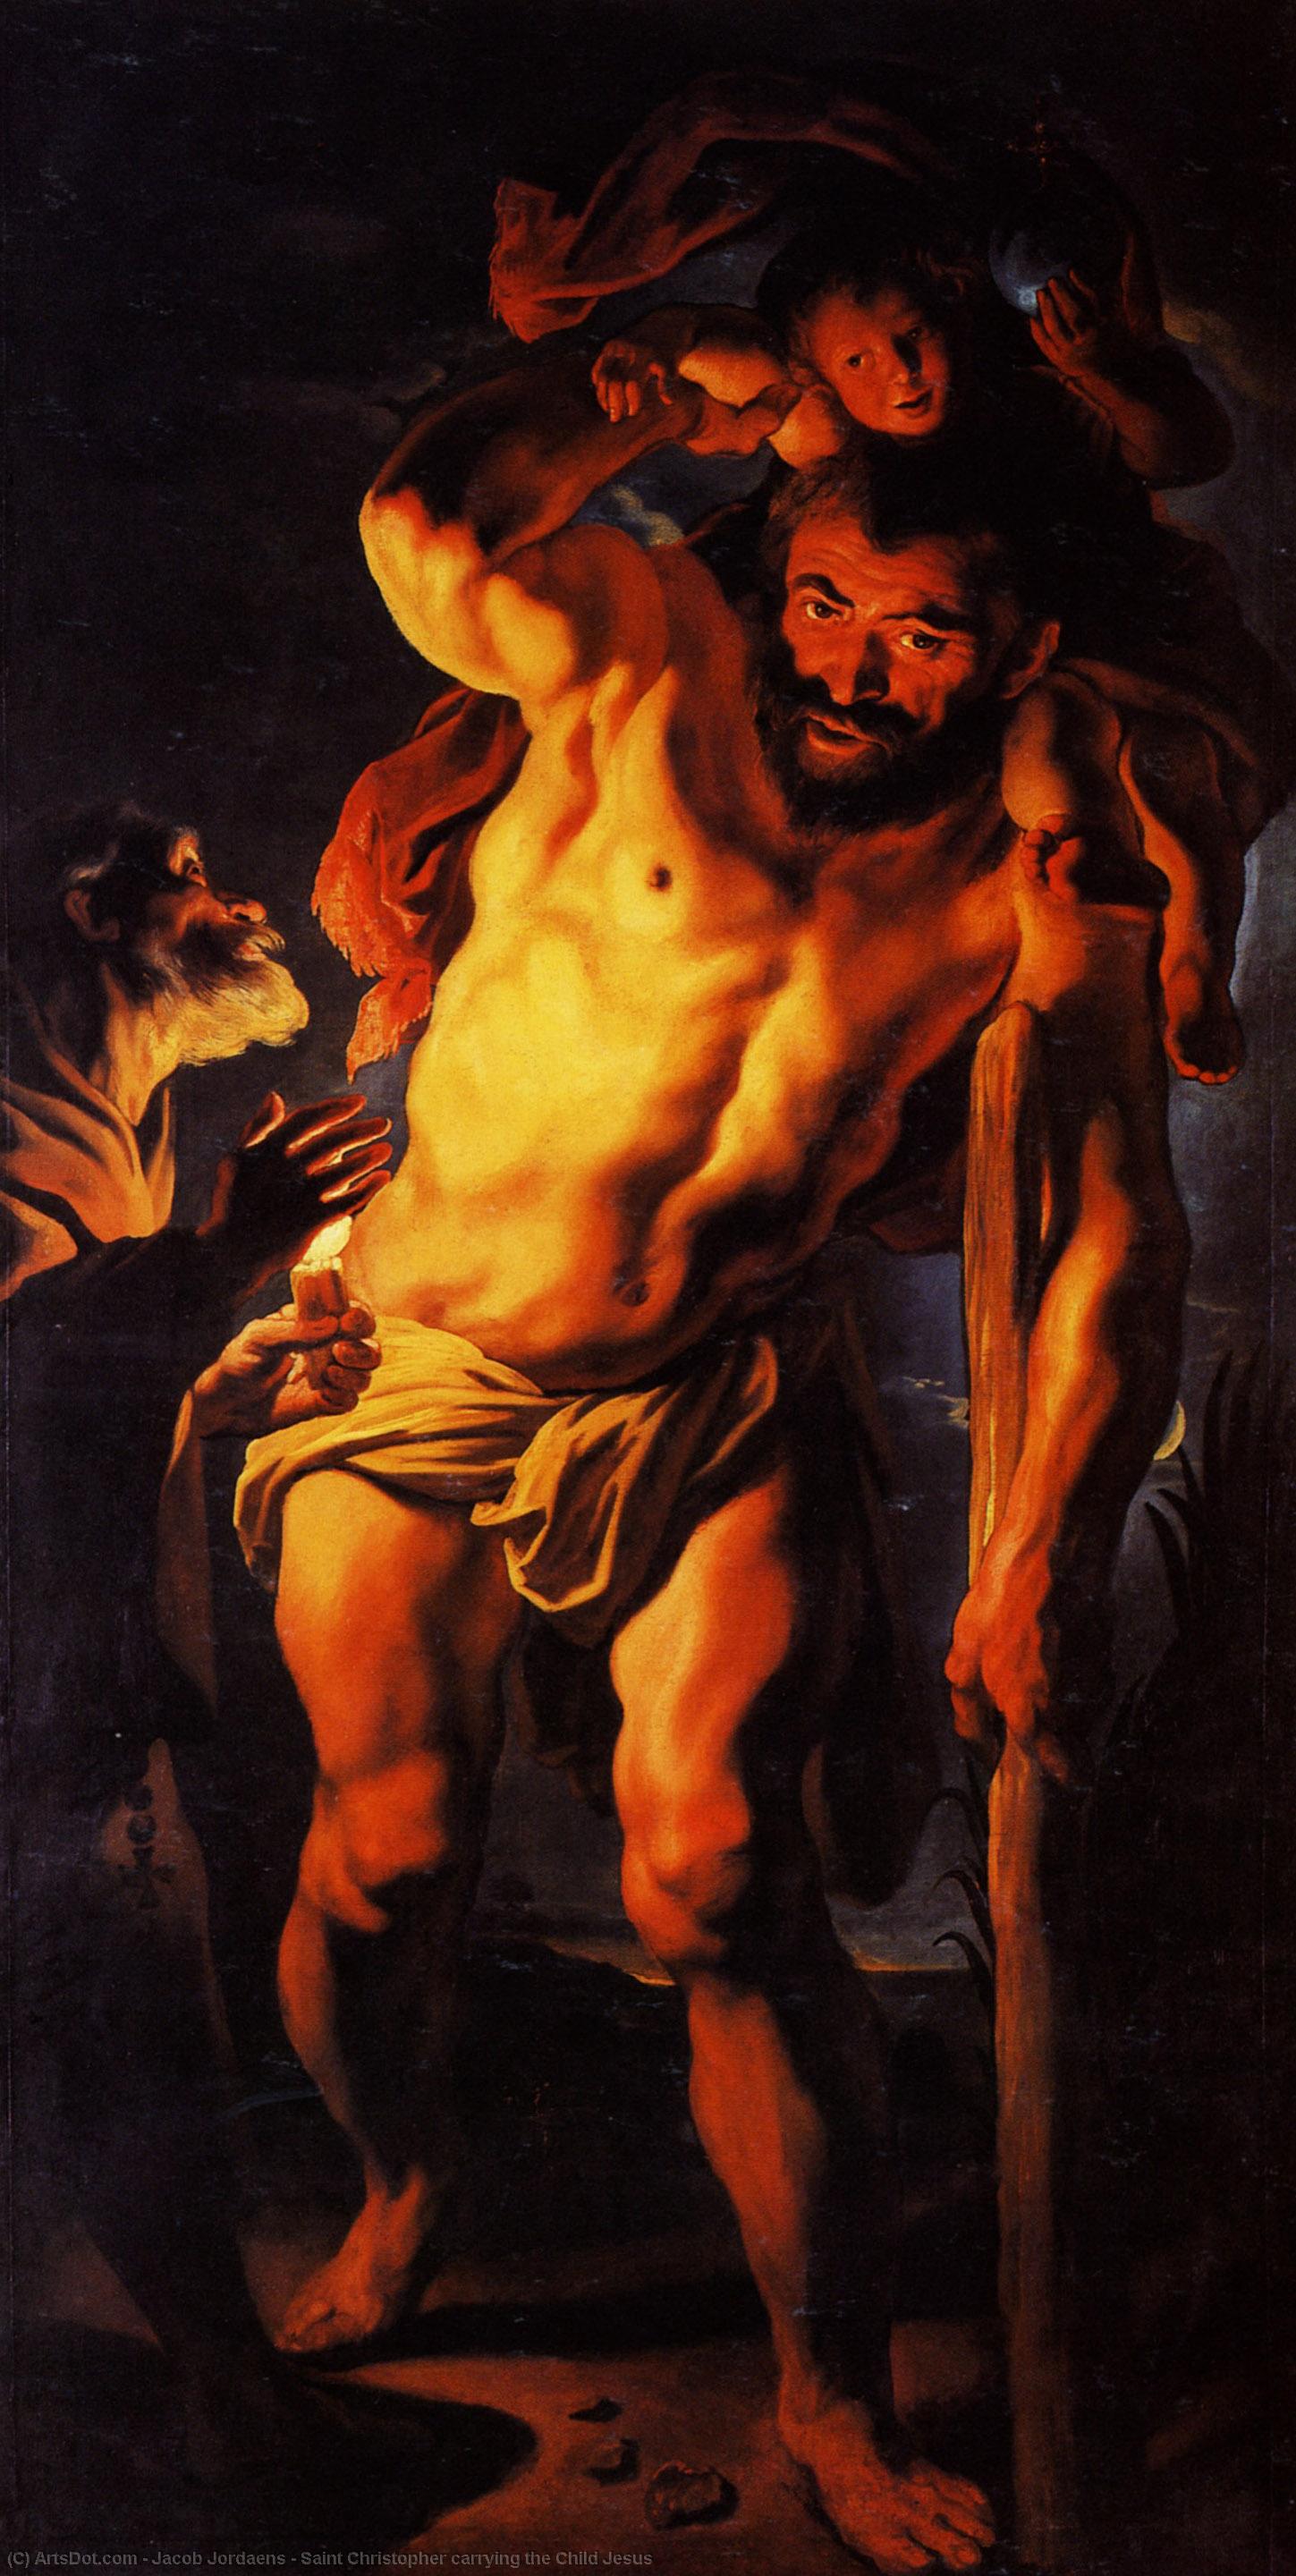 WikiOO.org - Enciklopedija dailės - Tapyba, meno kuriniai Jacob Jordaens - Saint Christopher carrying the Child Jesus